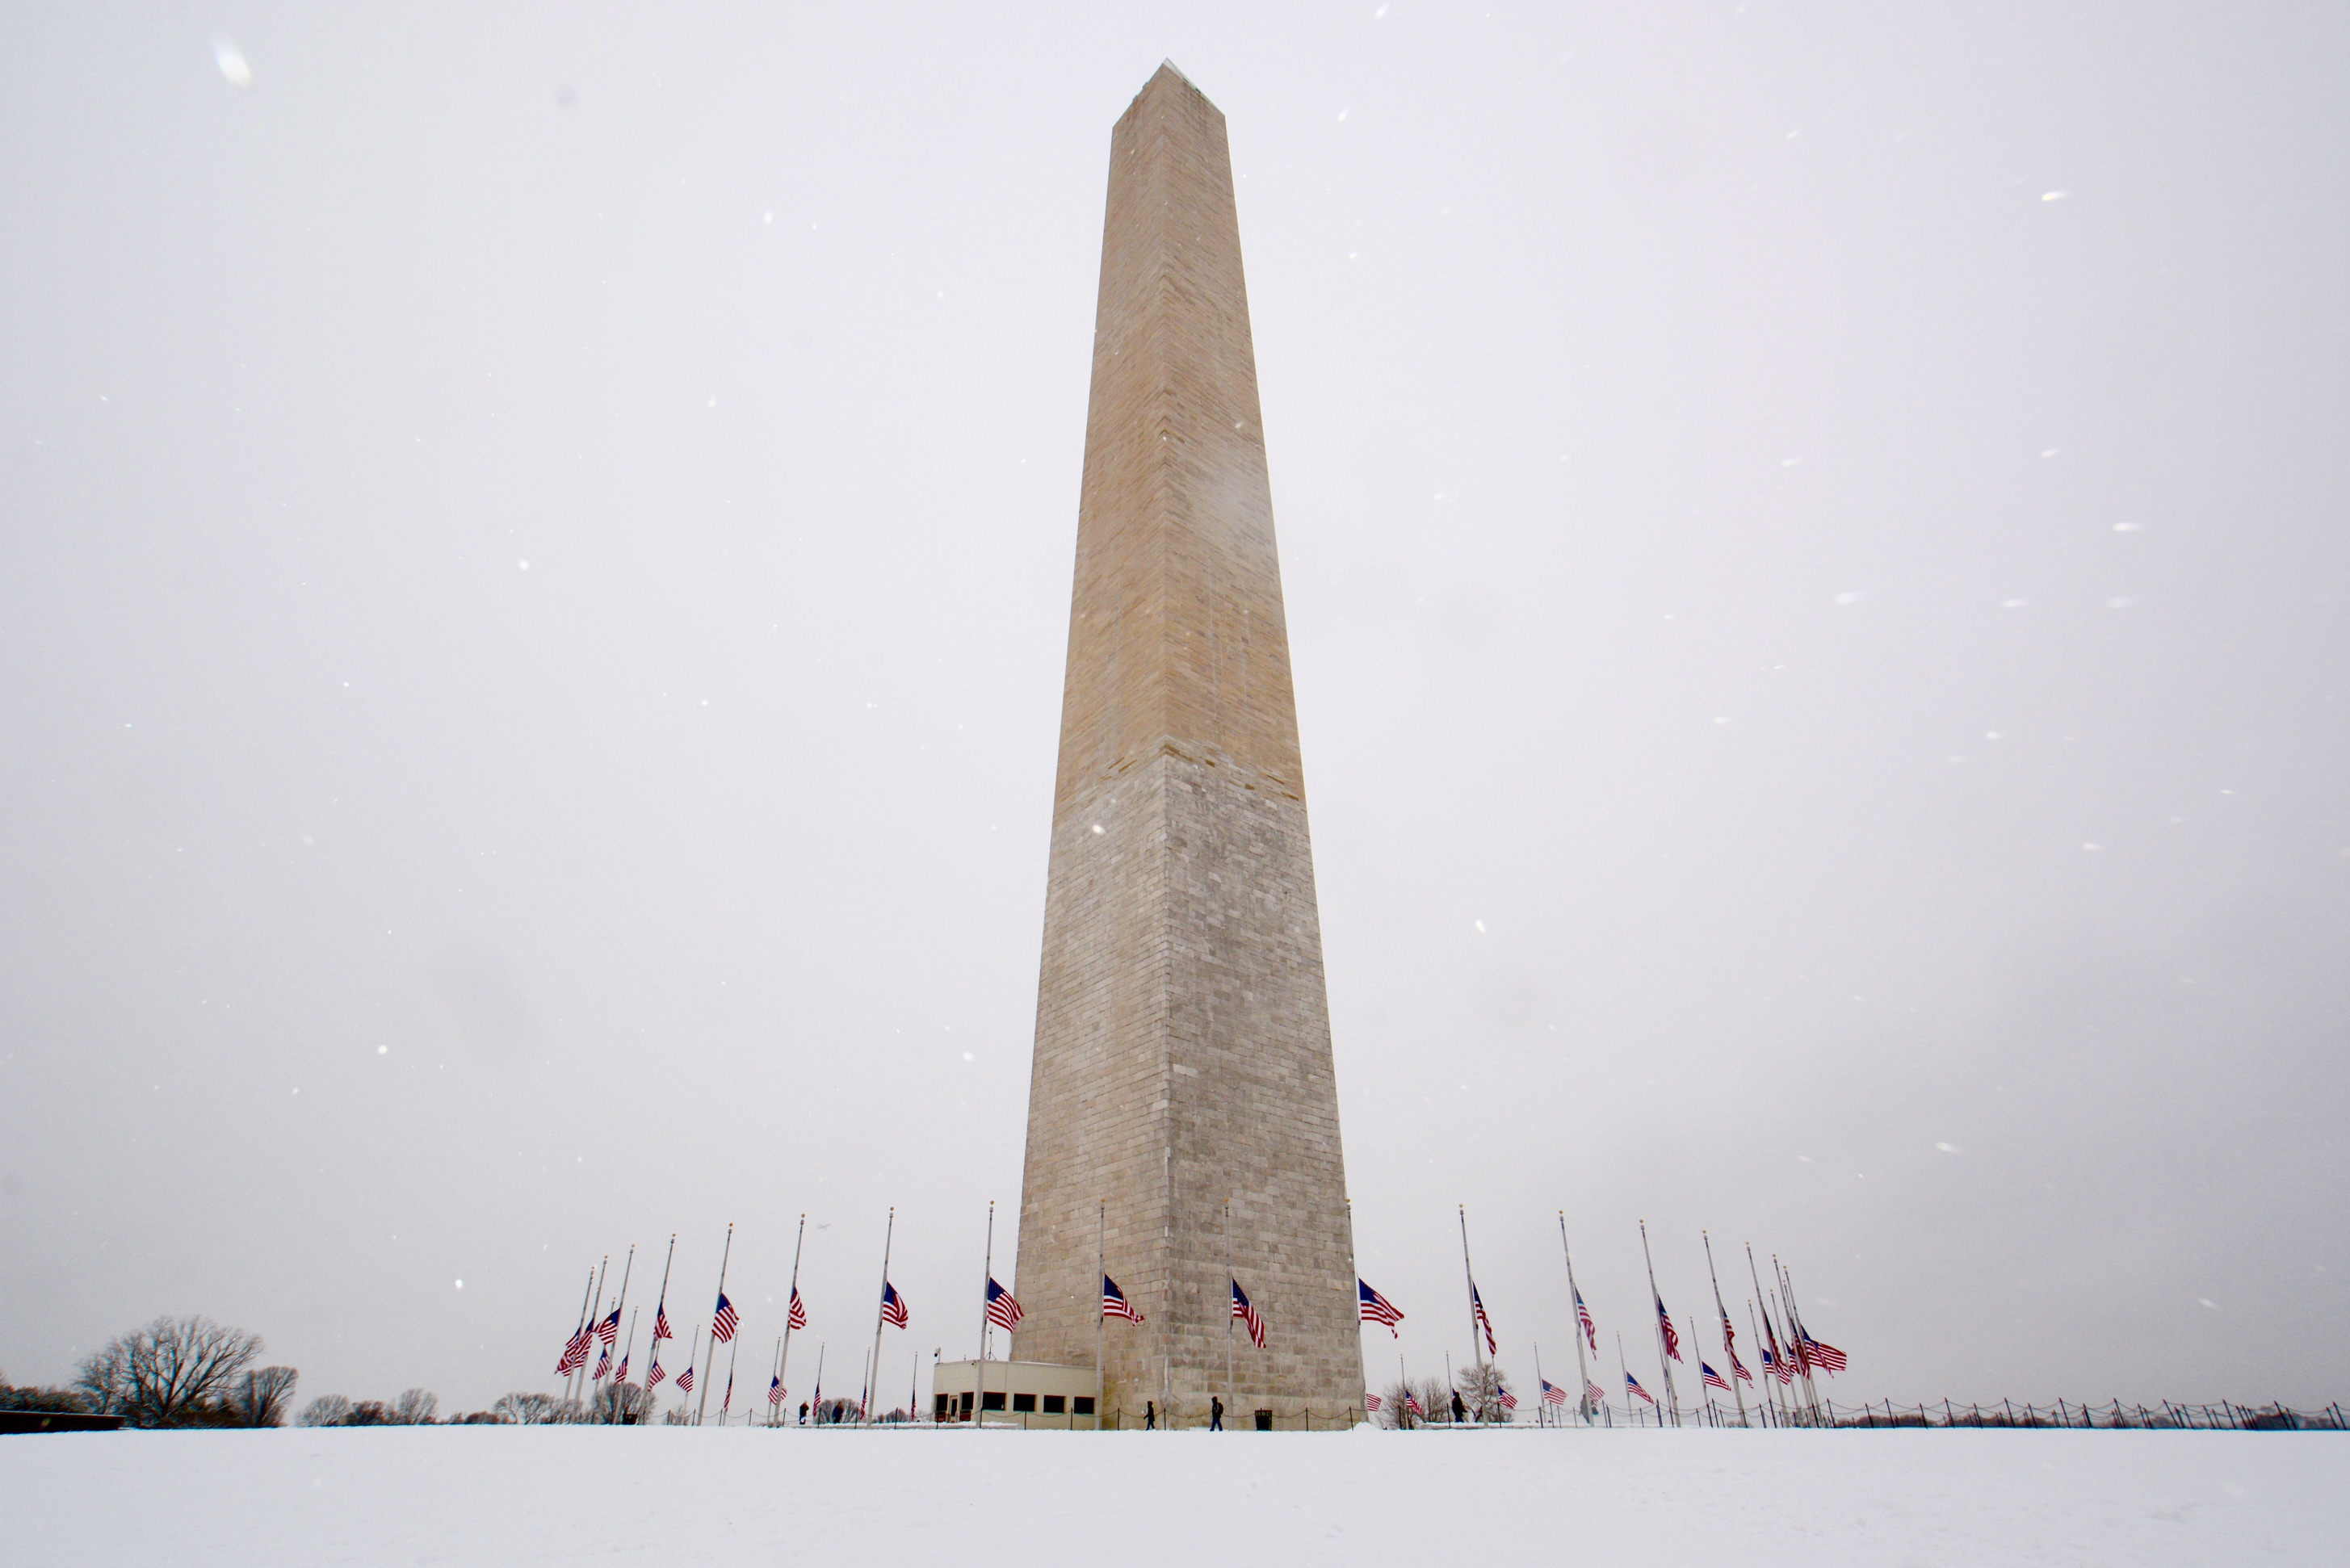 Washington Monument to reopen Tuesday